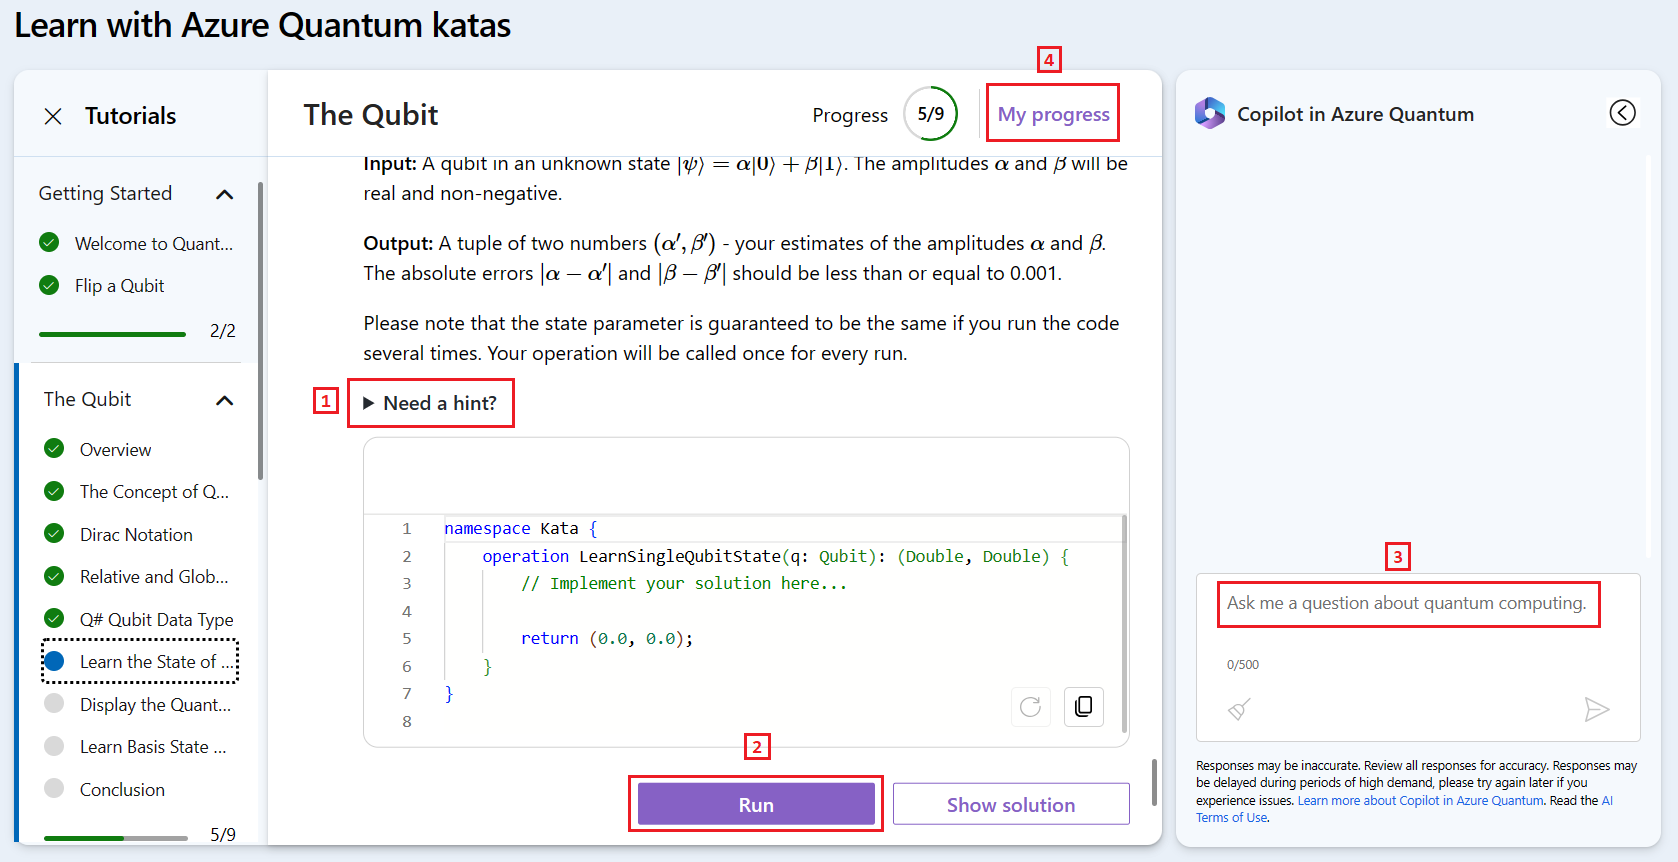 Capture d’écran du site web Azure Quantum montrant les tutoriels Quantum Katas avec Copilot.